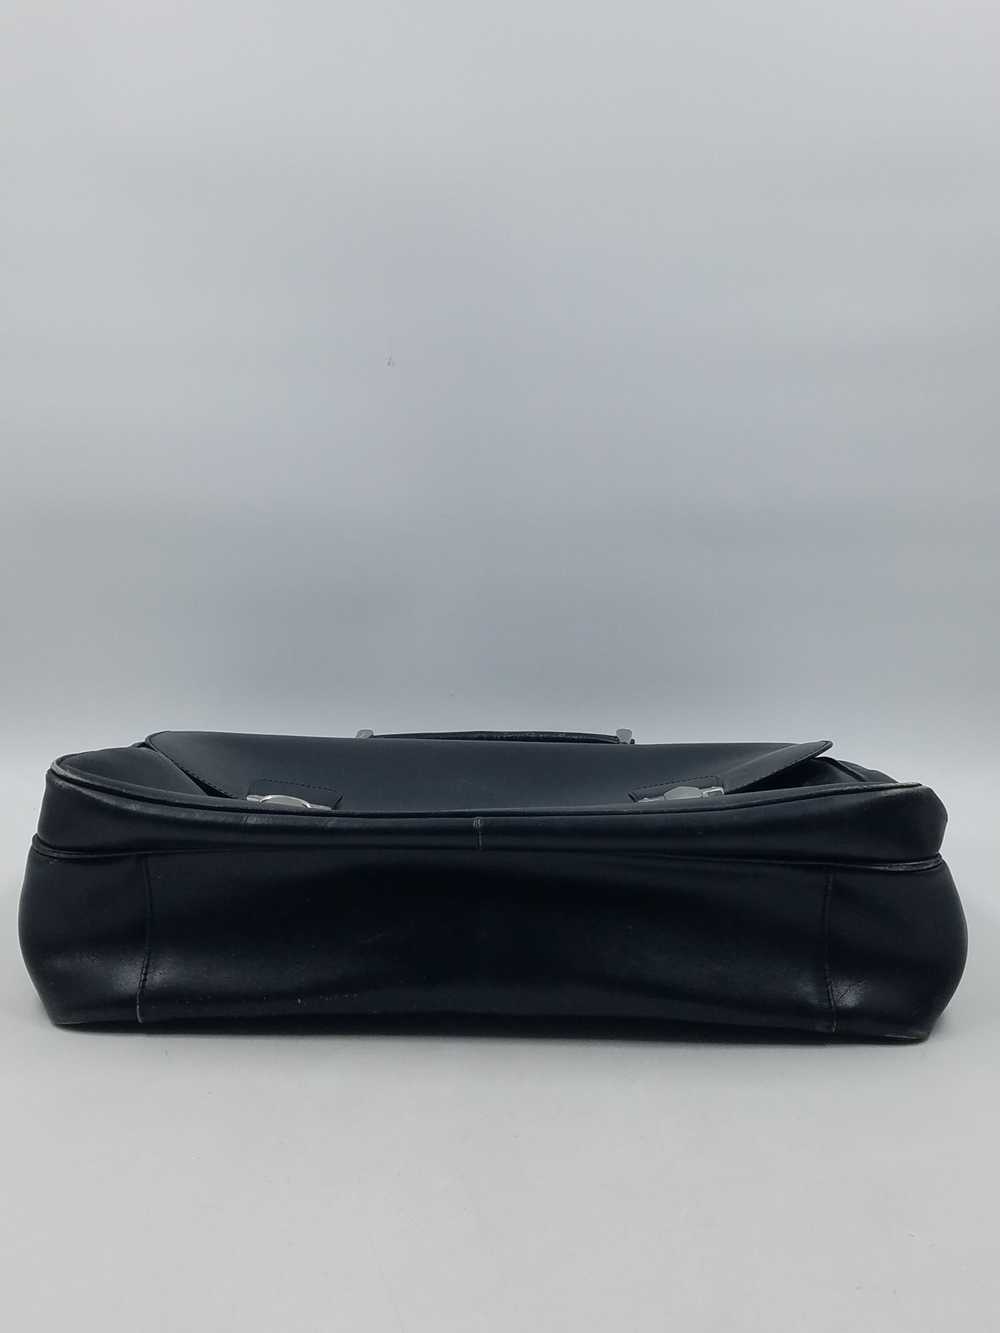 Authentic Prada Black Leather Briefcase - image 4